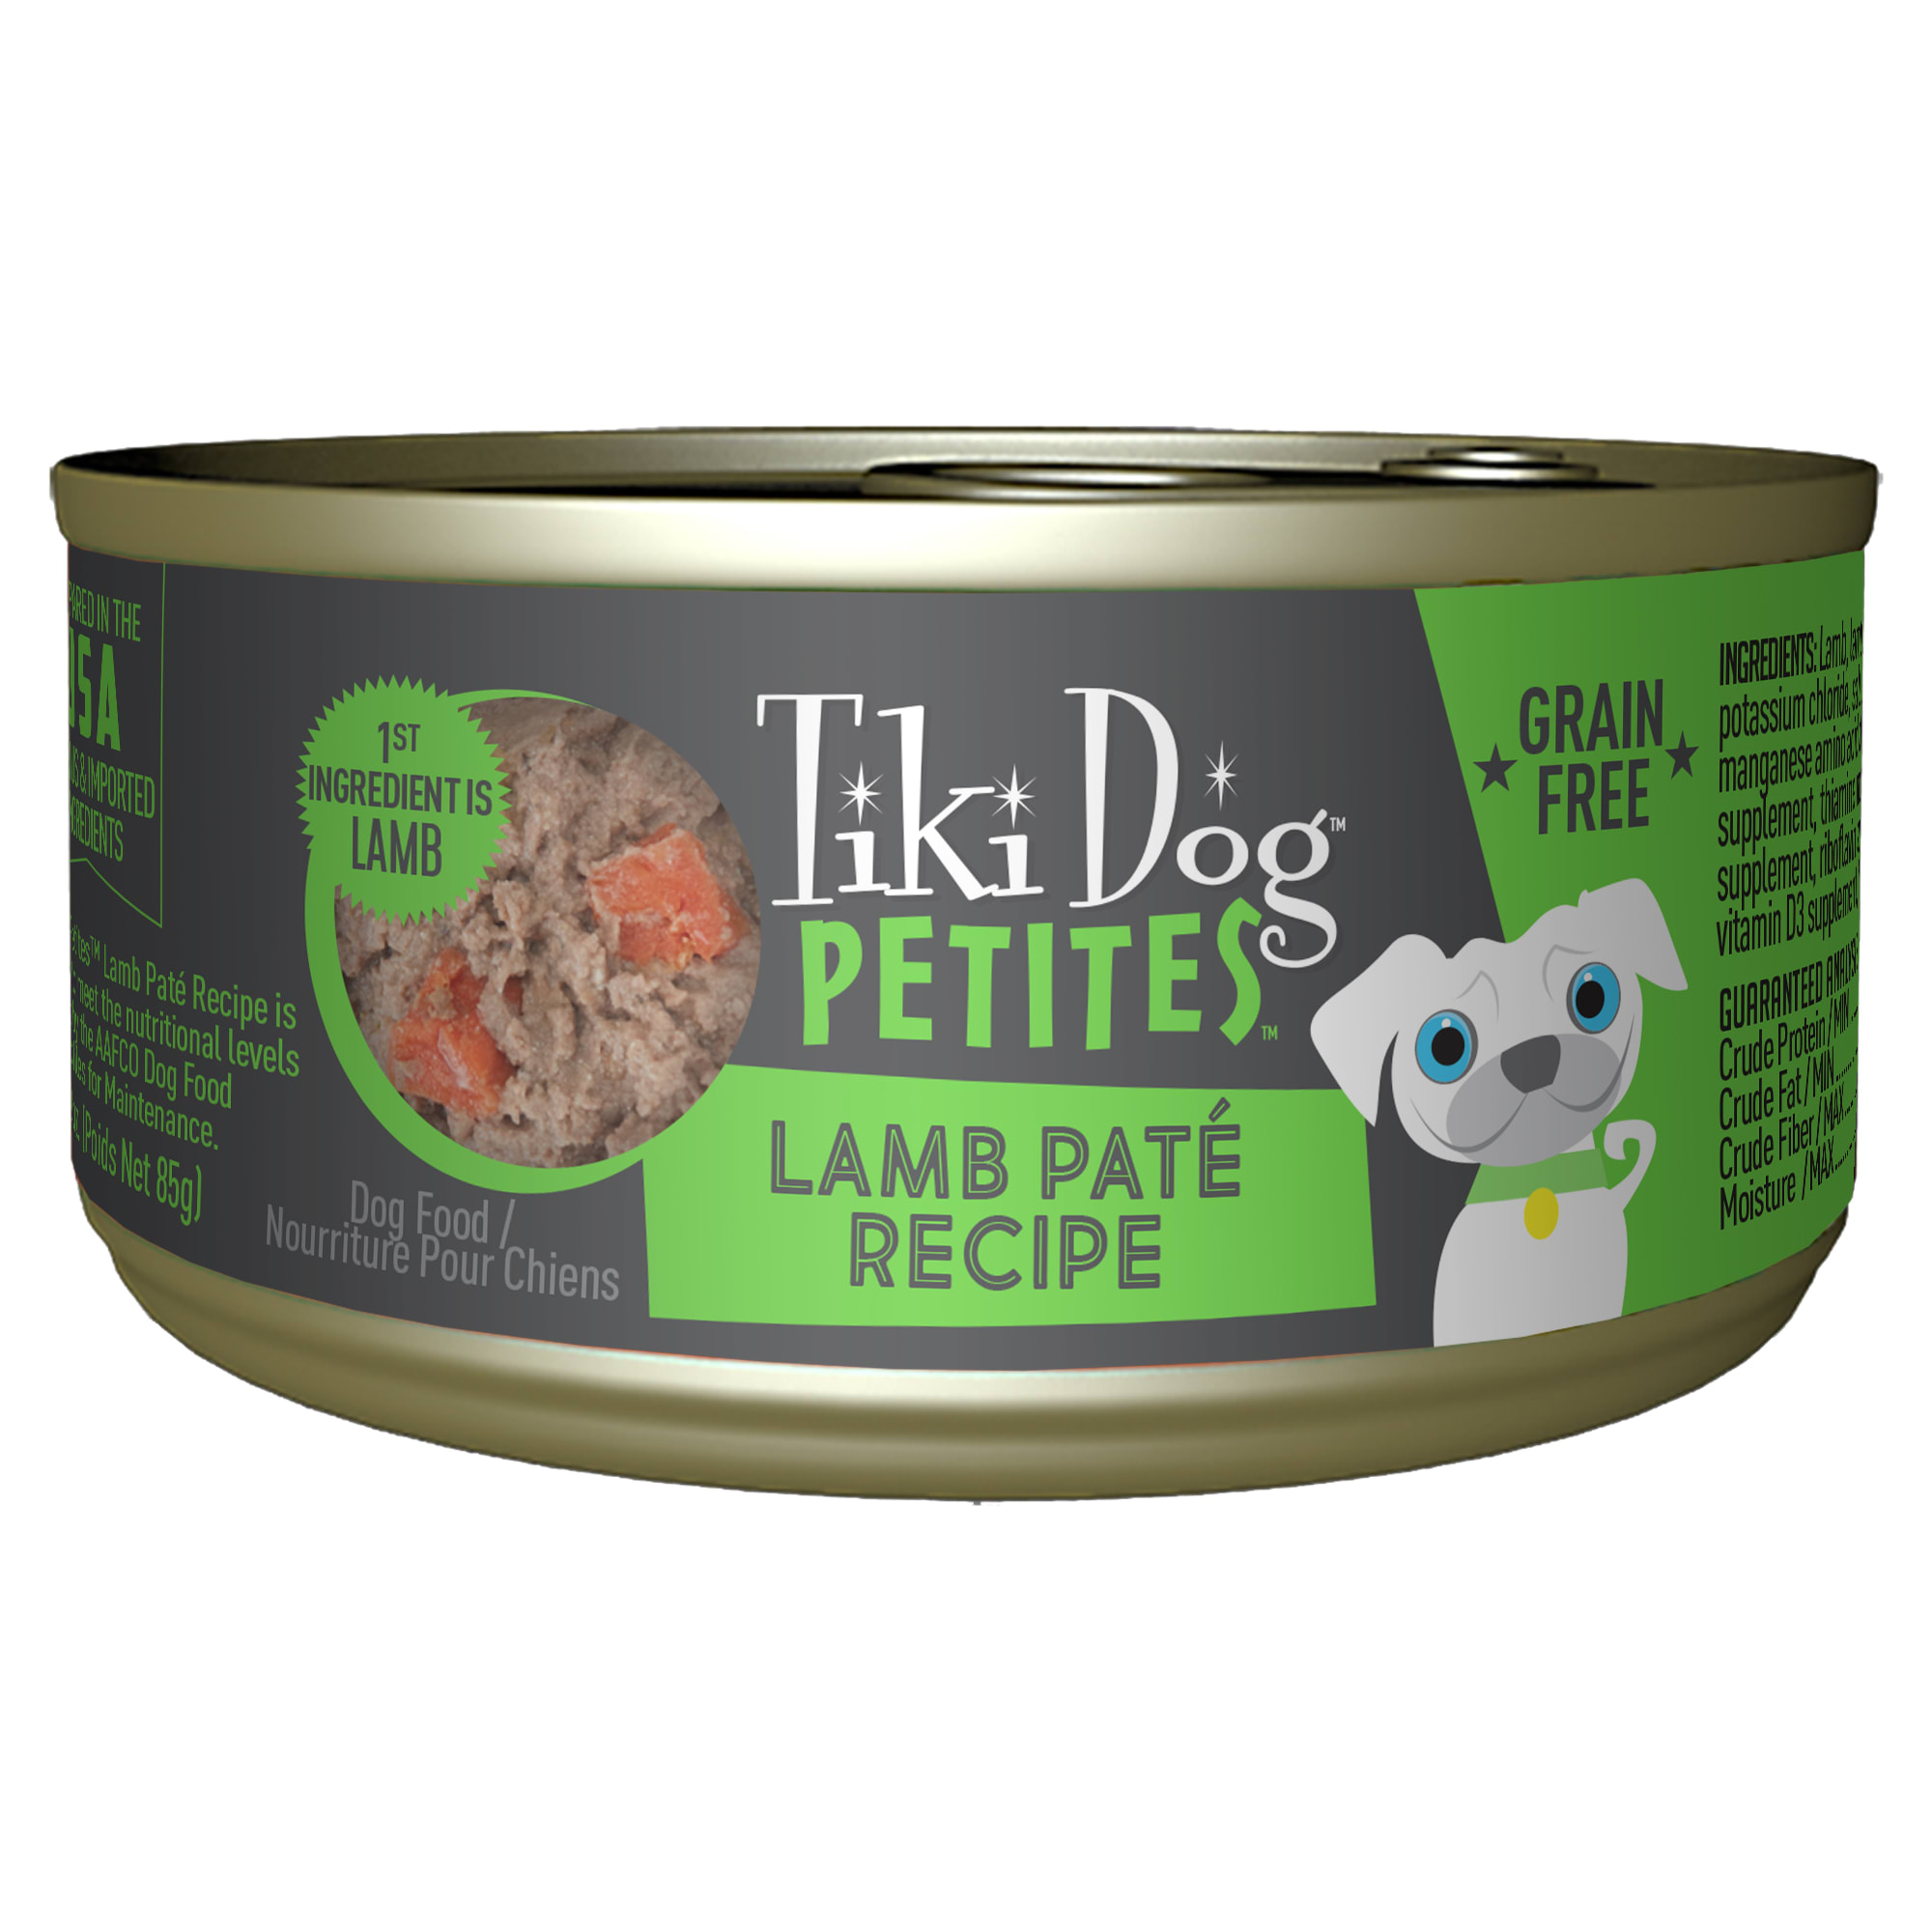 Tiki Dog Petites Lamb Pate Wet Food, 3 oz., Case of 12 Petco